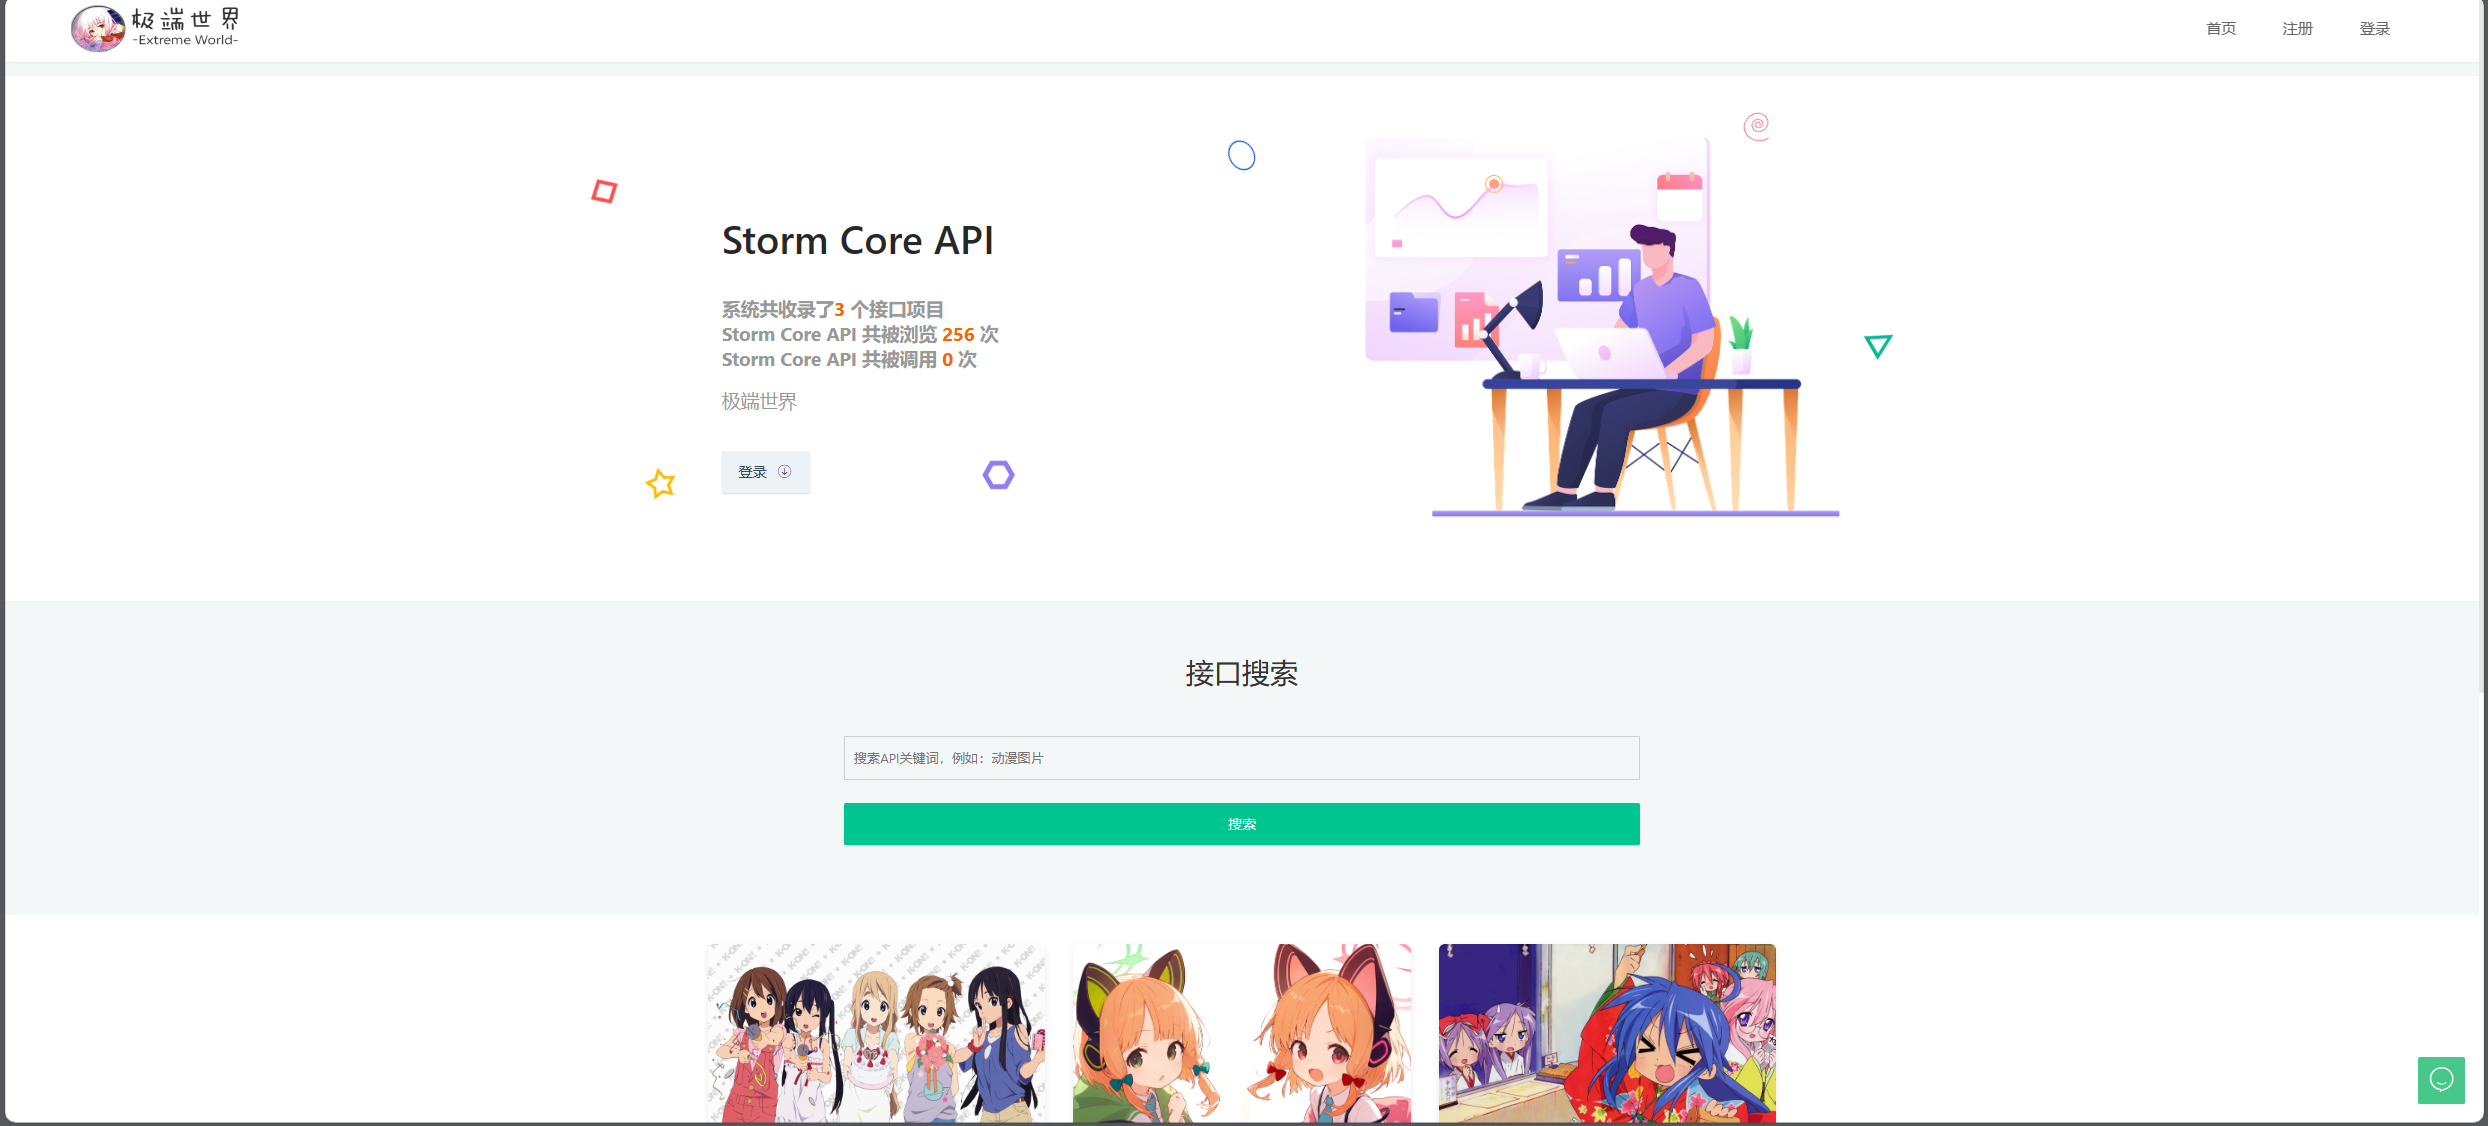 Storm Core API_V1.1免授权版-林天恒博客